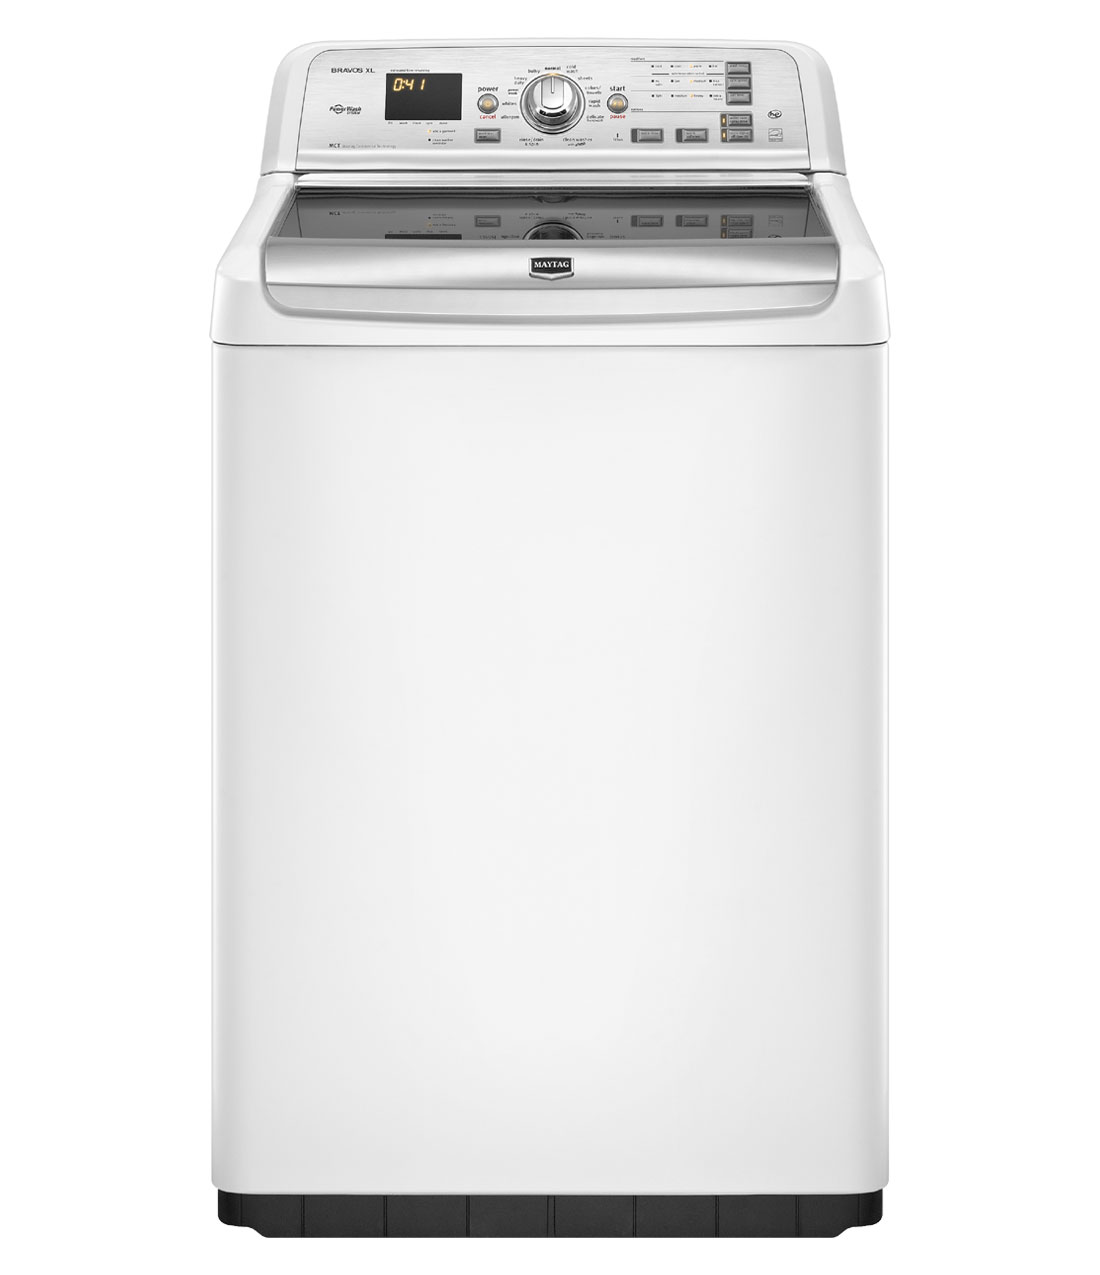 Maytag Bravos XL 4.6 cu. ft. High-Efficiency Top Load Washer in White (Model: MVWB850YW)